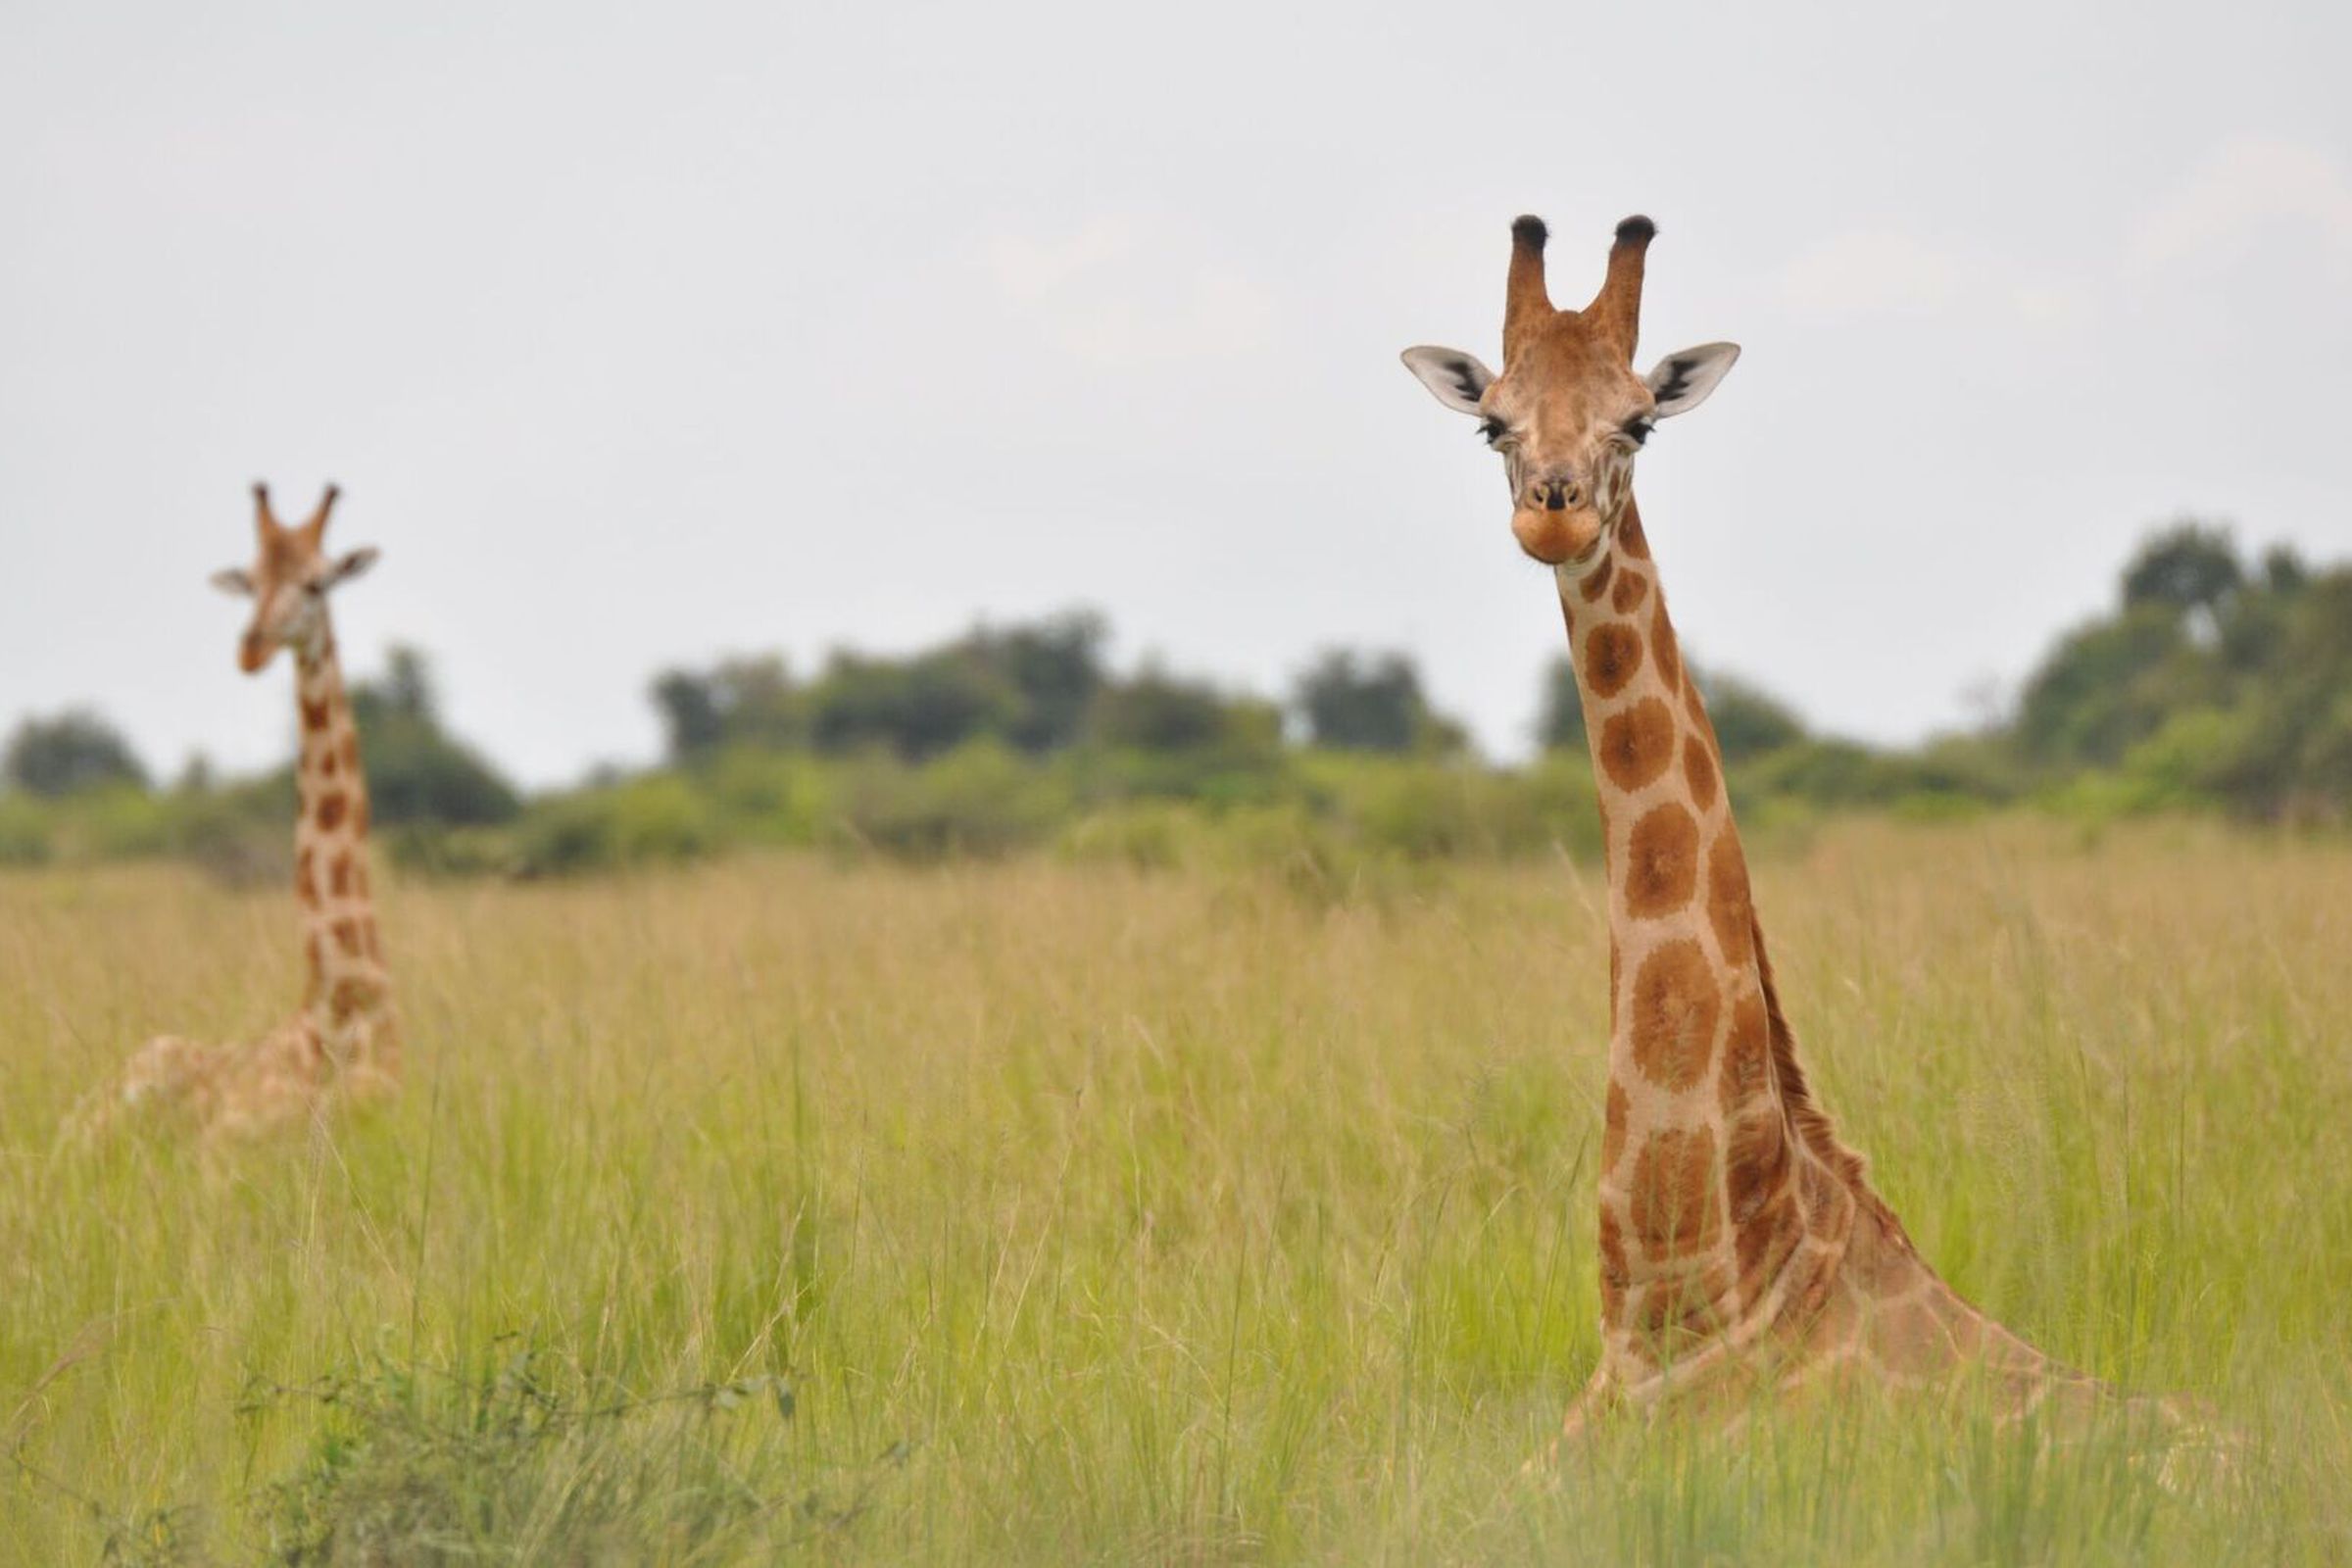 A Nubian giraffe, part of the northern giraffe species